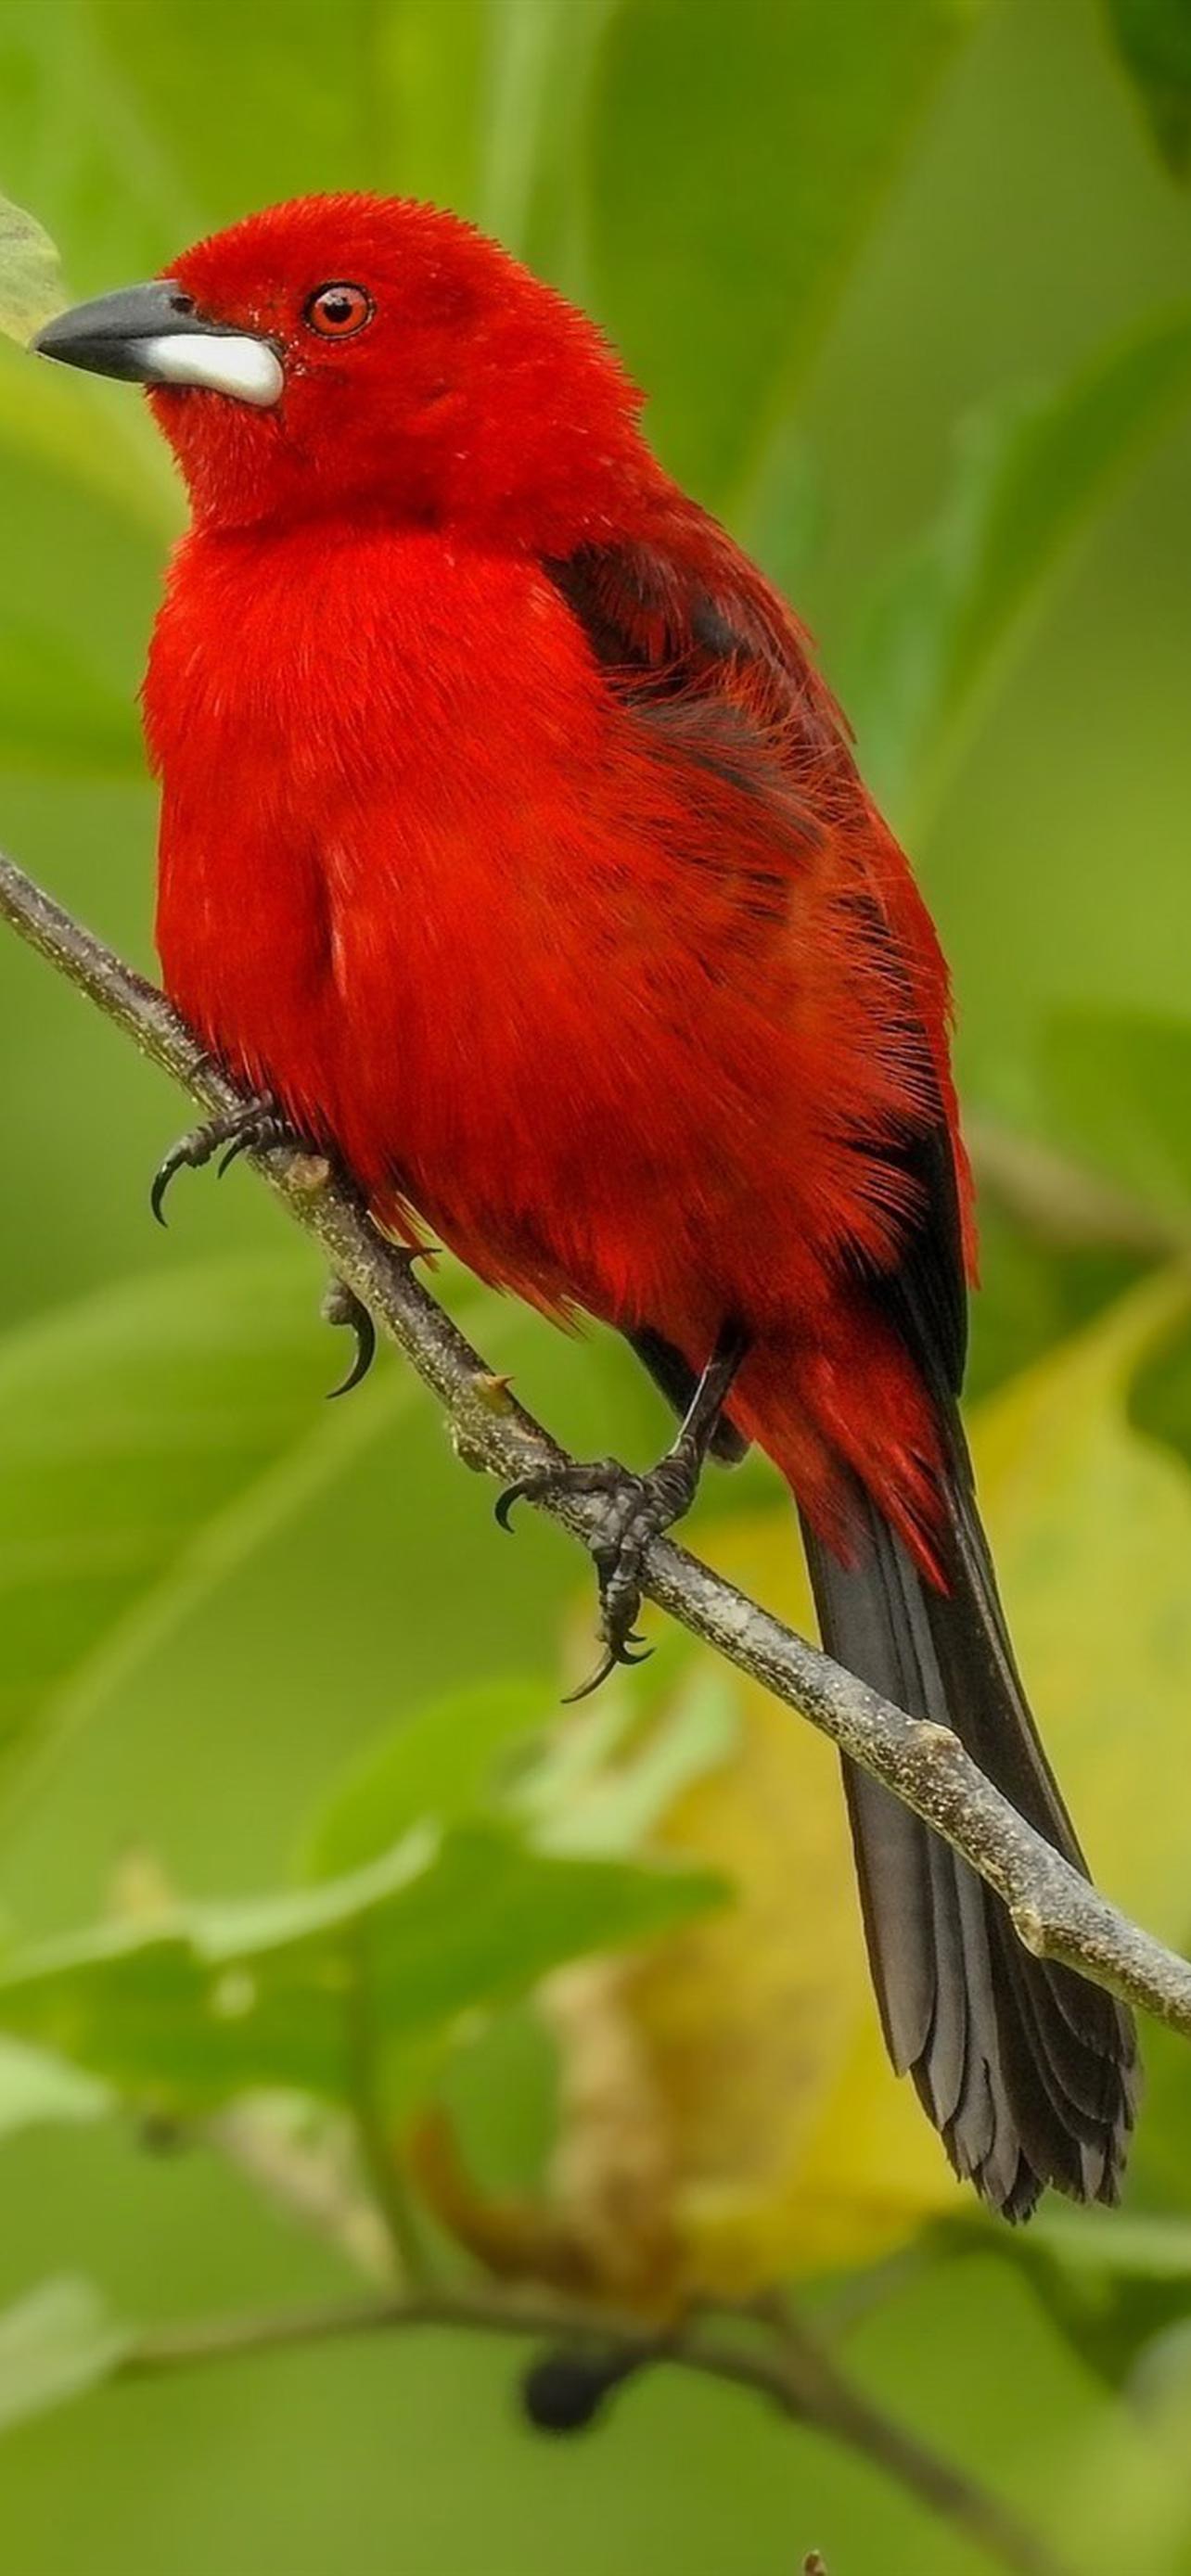 Красные и зеленые посмотрите. Красная птица. Птичка красного цвета. Птица с красными перьями. Маленькая красная птица.